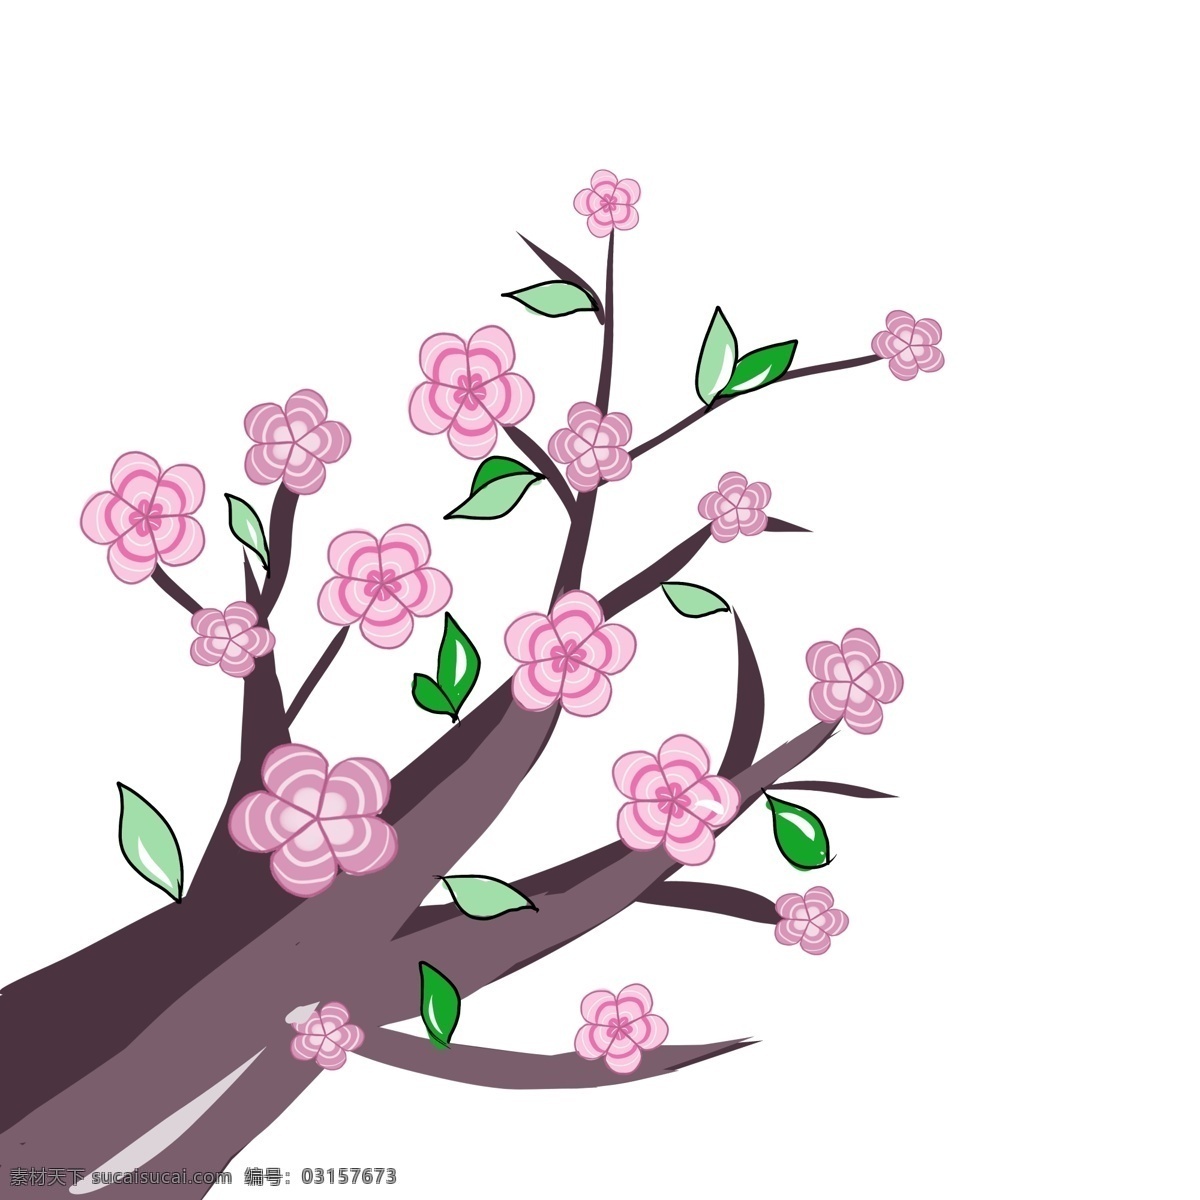 盛开 粉色 樱花 插画 春季的樱花 卡通插画 樱花插画 花朵插画 叶子插画 鲜花插画 盛开的樱花